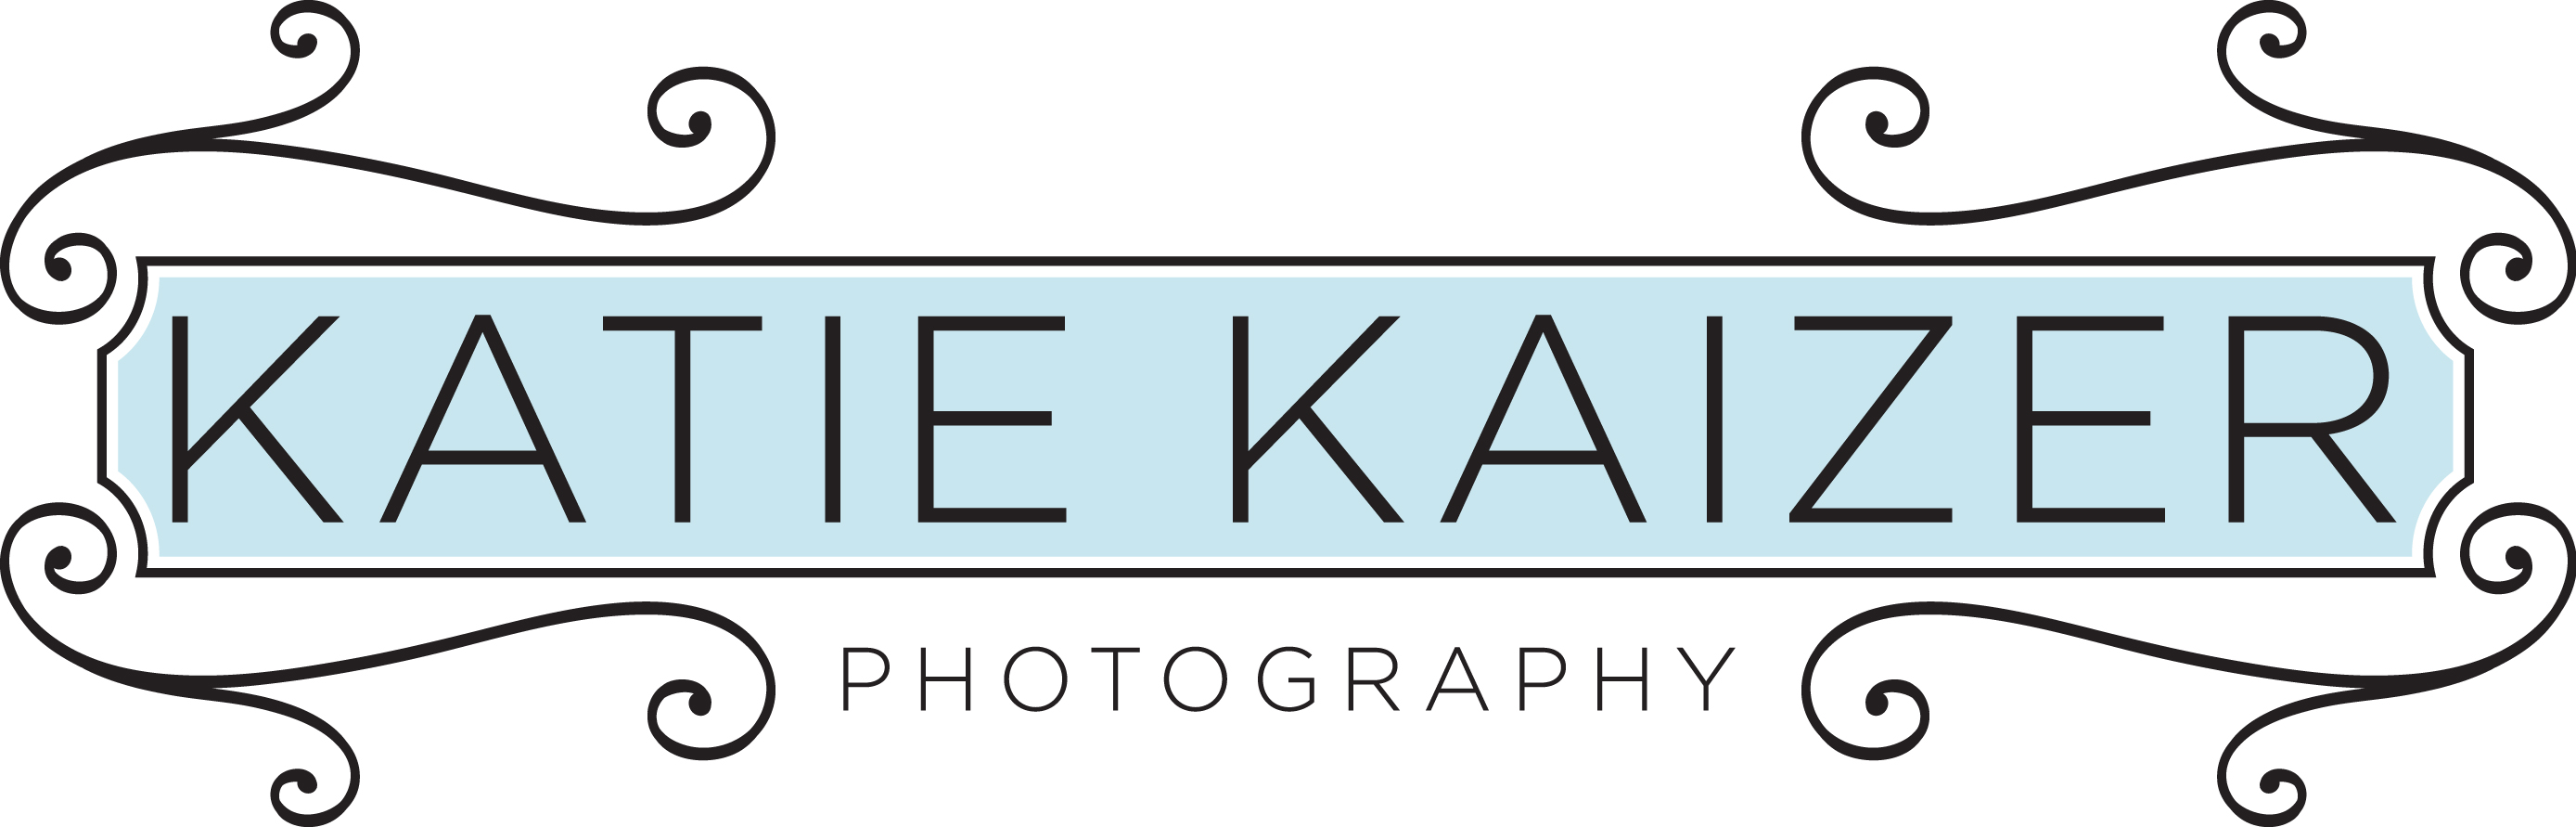 kk logo-large